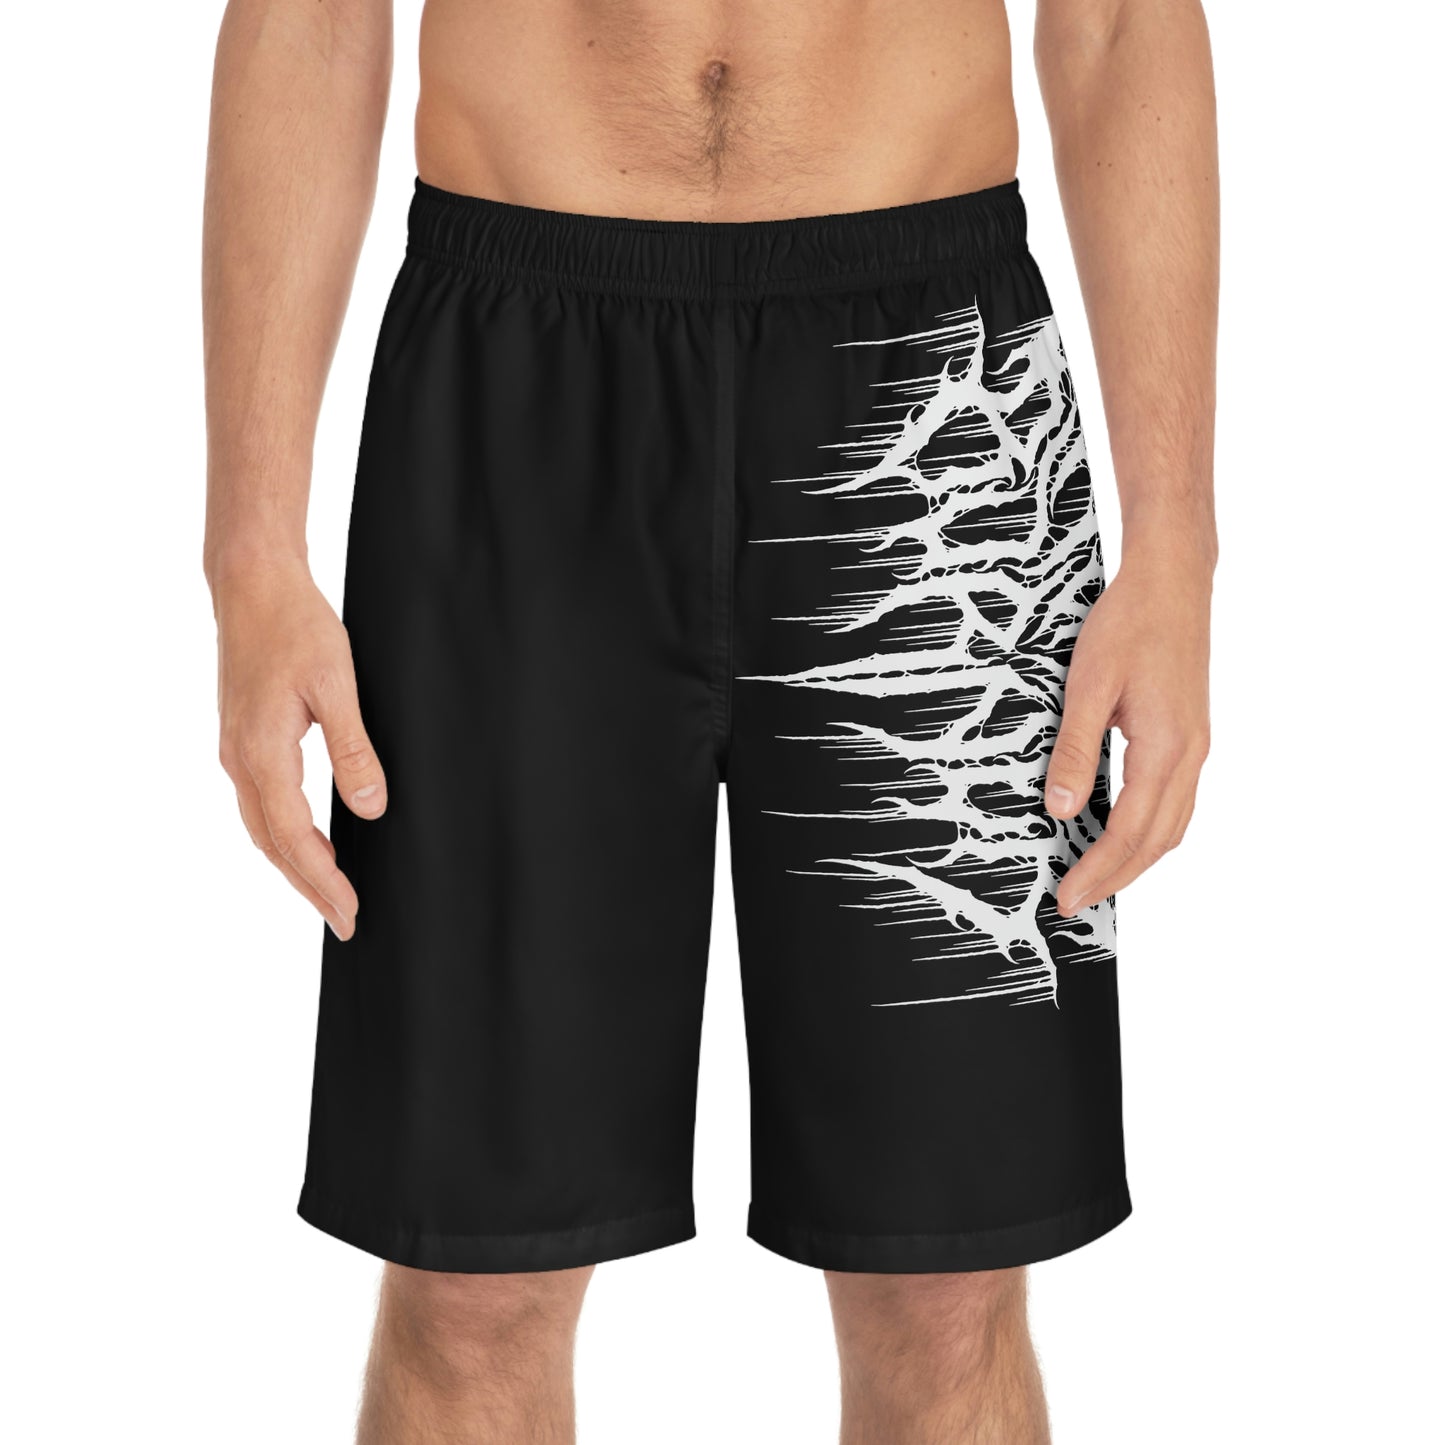 Nerve Burner Board Shorts